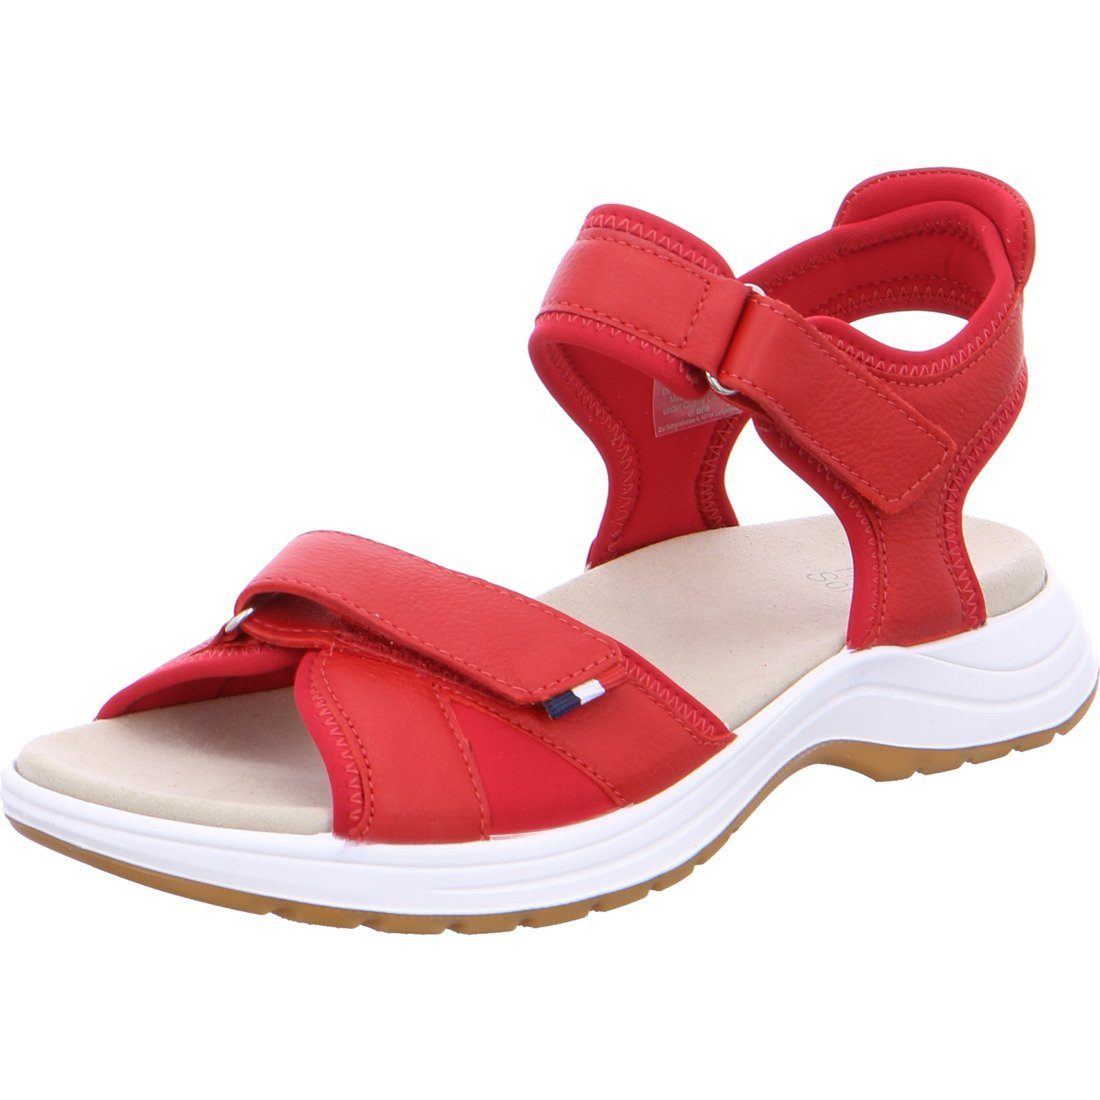 Ara Ara Schuhe, Sandalette Panama - Glattleder Sandalette rot 042414